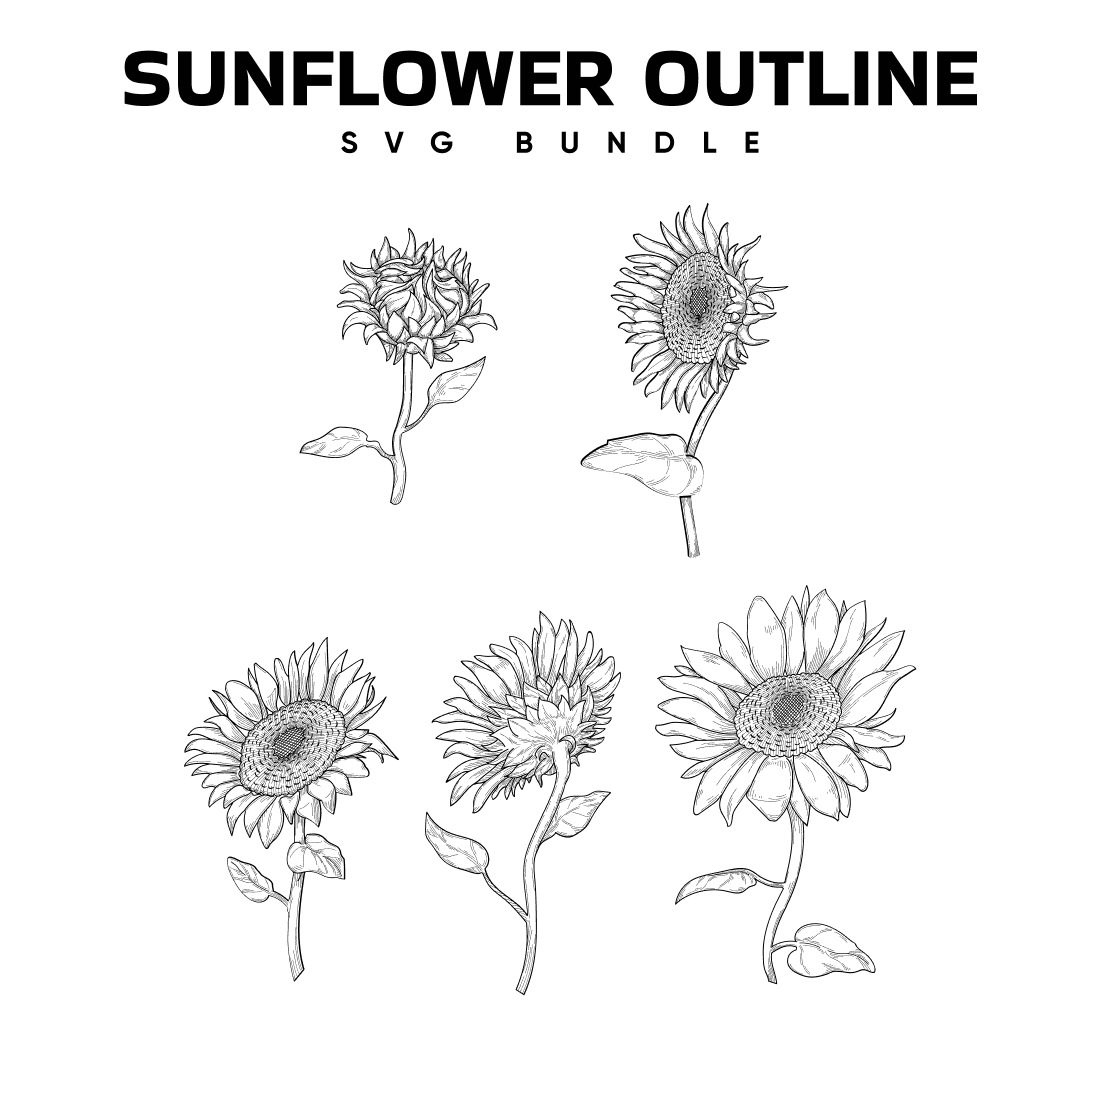 Sunflower Outline SVG.